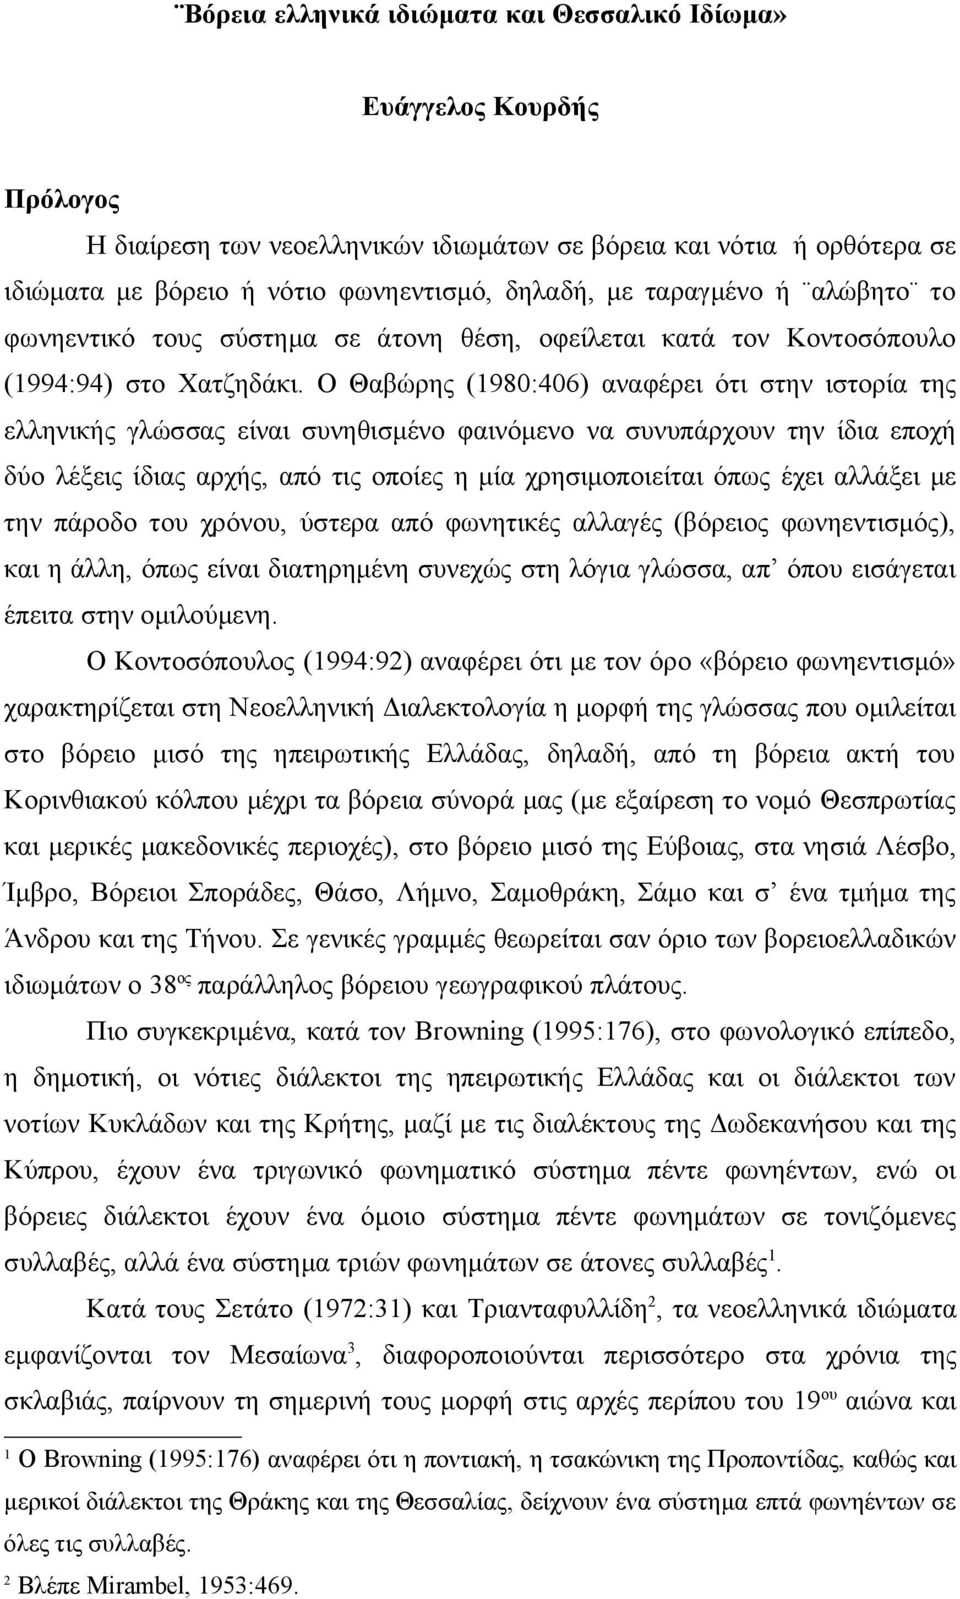 Ο Θαβώρης (1980:406) αναφέρει ότι στην ιστορία της ελληνικής γλώσσας είναι συνηθισμένο φαινόμενο να συνυπάρχουν την ίδια εποχή δύο λέξεις ίδιας αρχής, από τις οποίες η μία χρησιμοποιείται όπως έχει